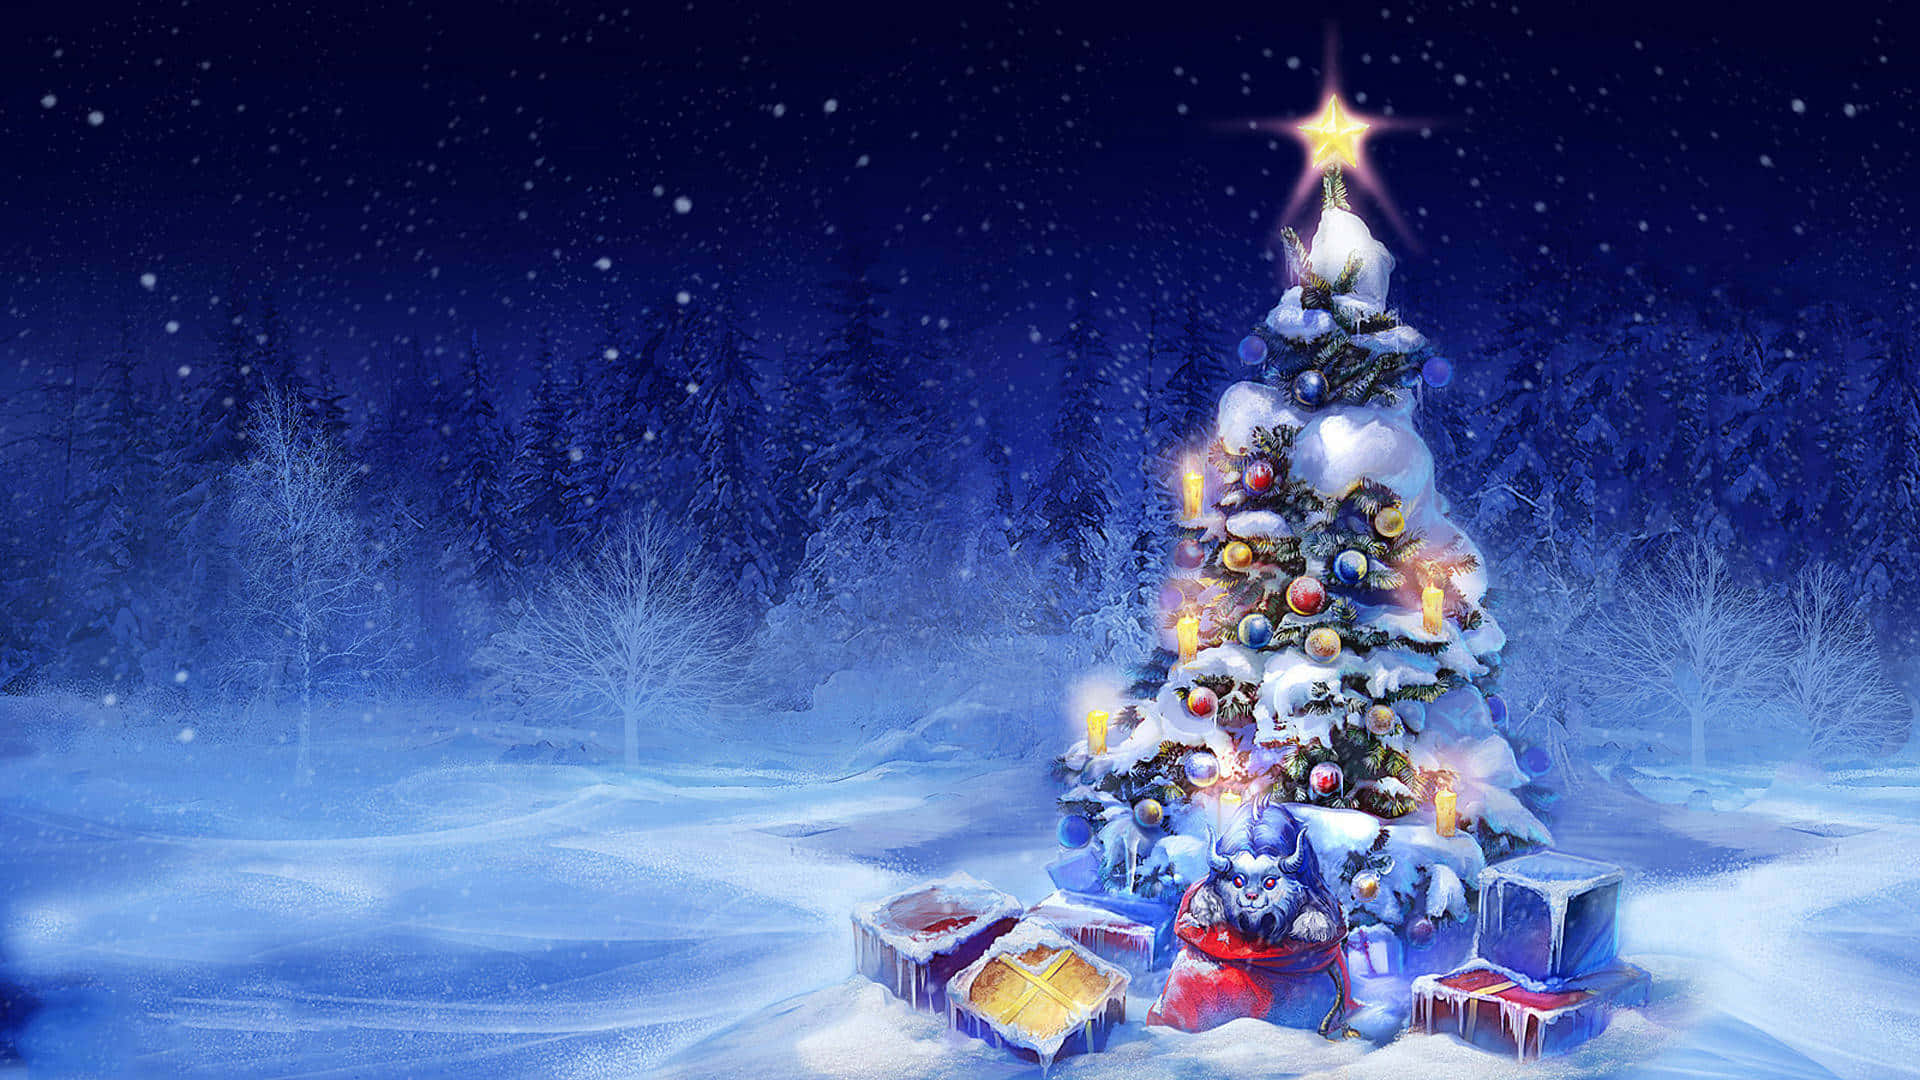 Einbezaubernder Winter-weihnachts-desktop Mit Einer Frostigen Schneewand, Die Von Warmen Lichtern Beleuchtet Wird. Wallpaper